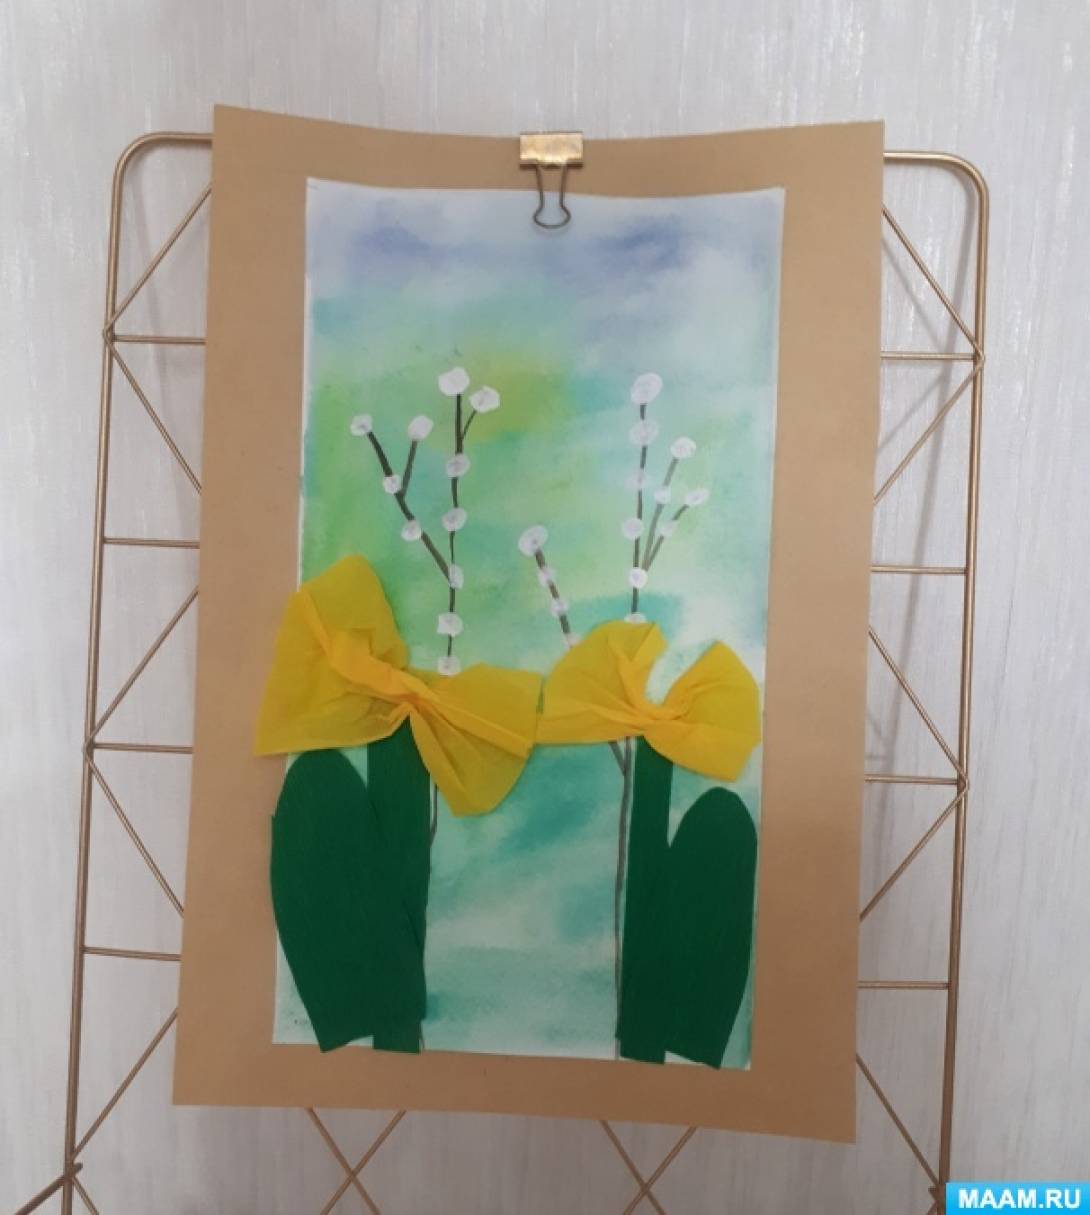 Детский мастер-класс по рисованию с элементами аппликации для детей 5–7 лет «Дыхание весны»